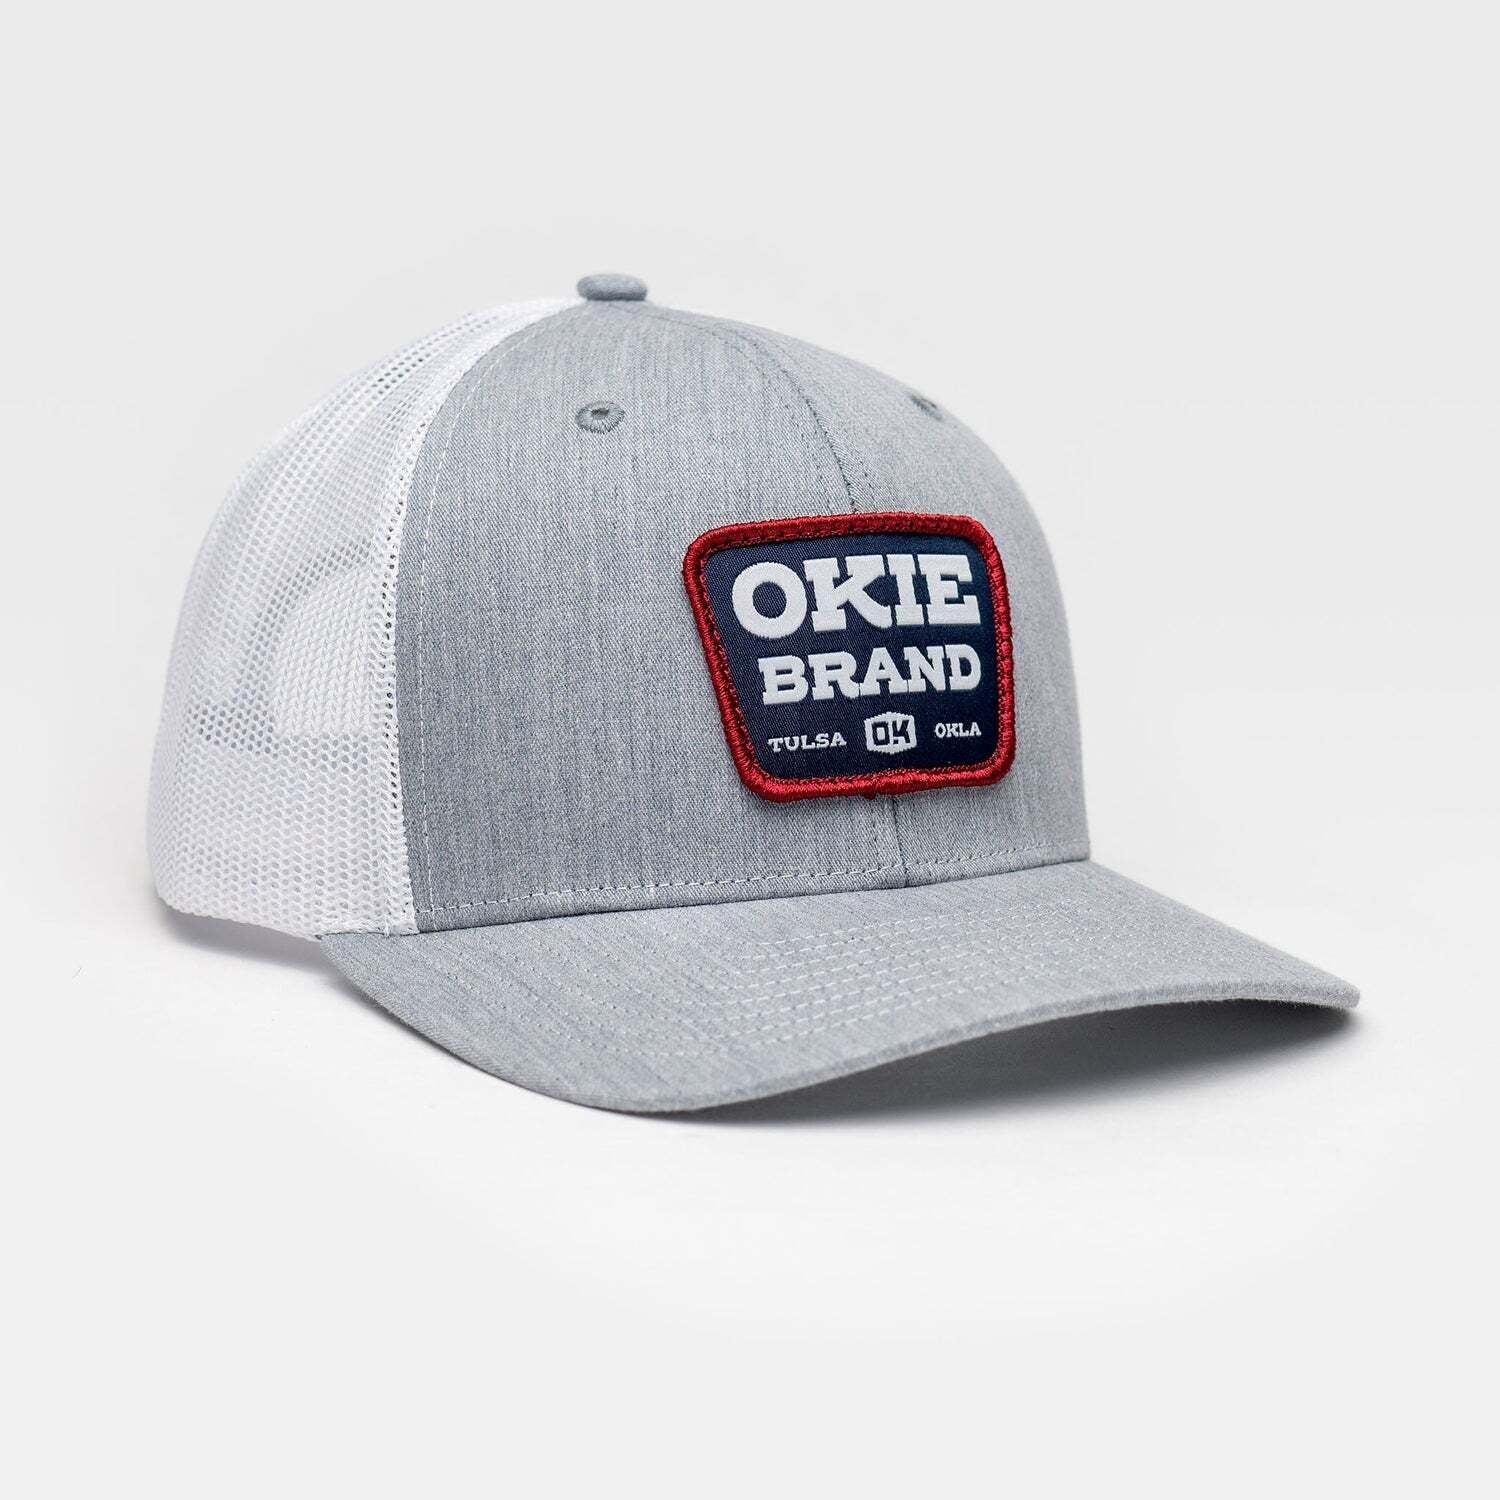 OBHW - The Okie Brand (The Dalton Gray/White Cap)